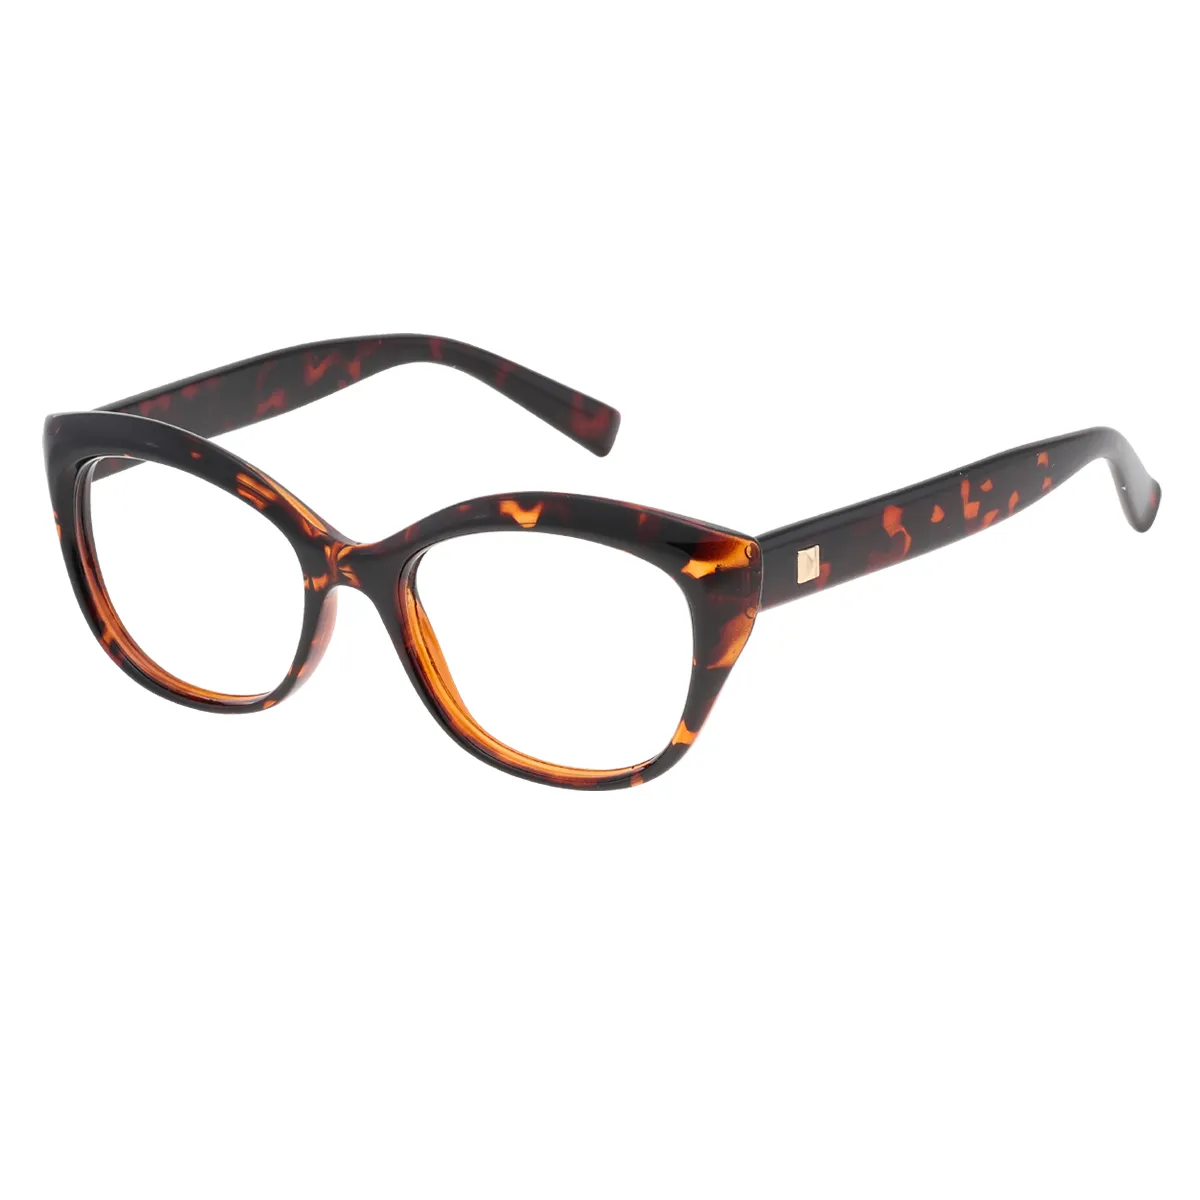 Khan - Cat-eye Tortoiseshell Glasses for Women - EFE